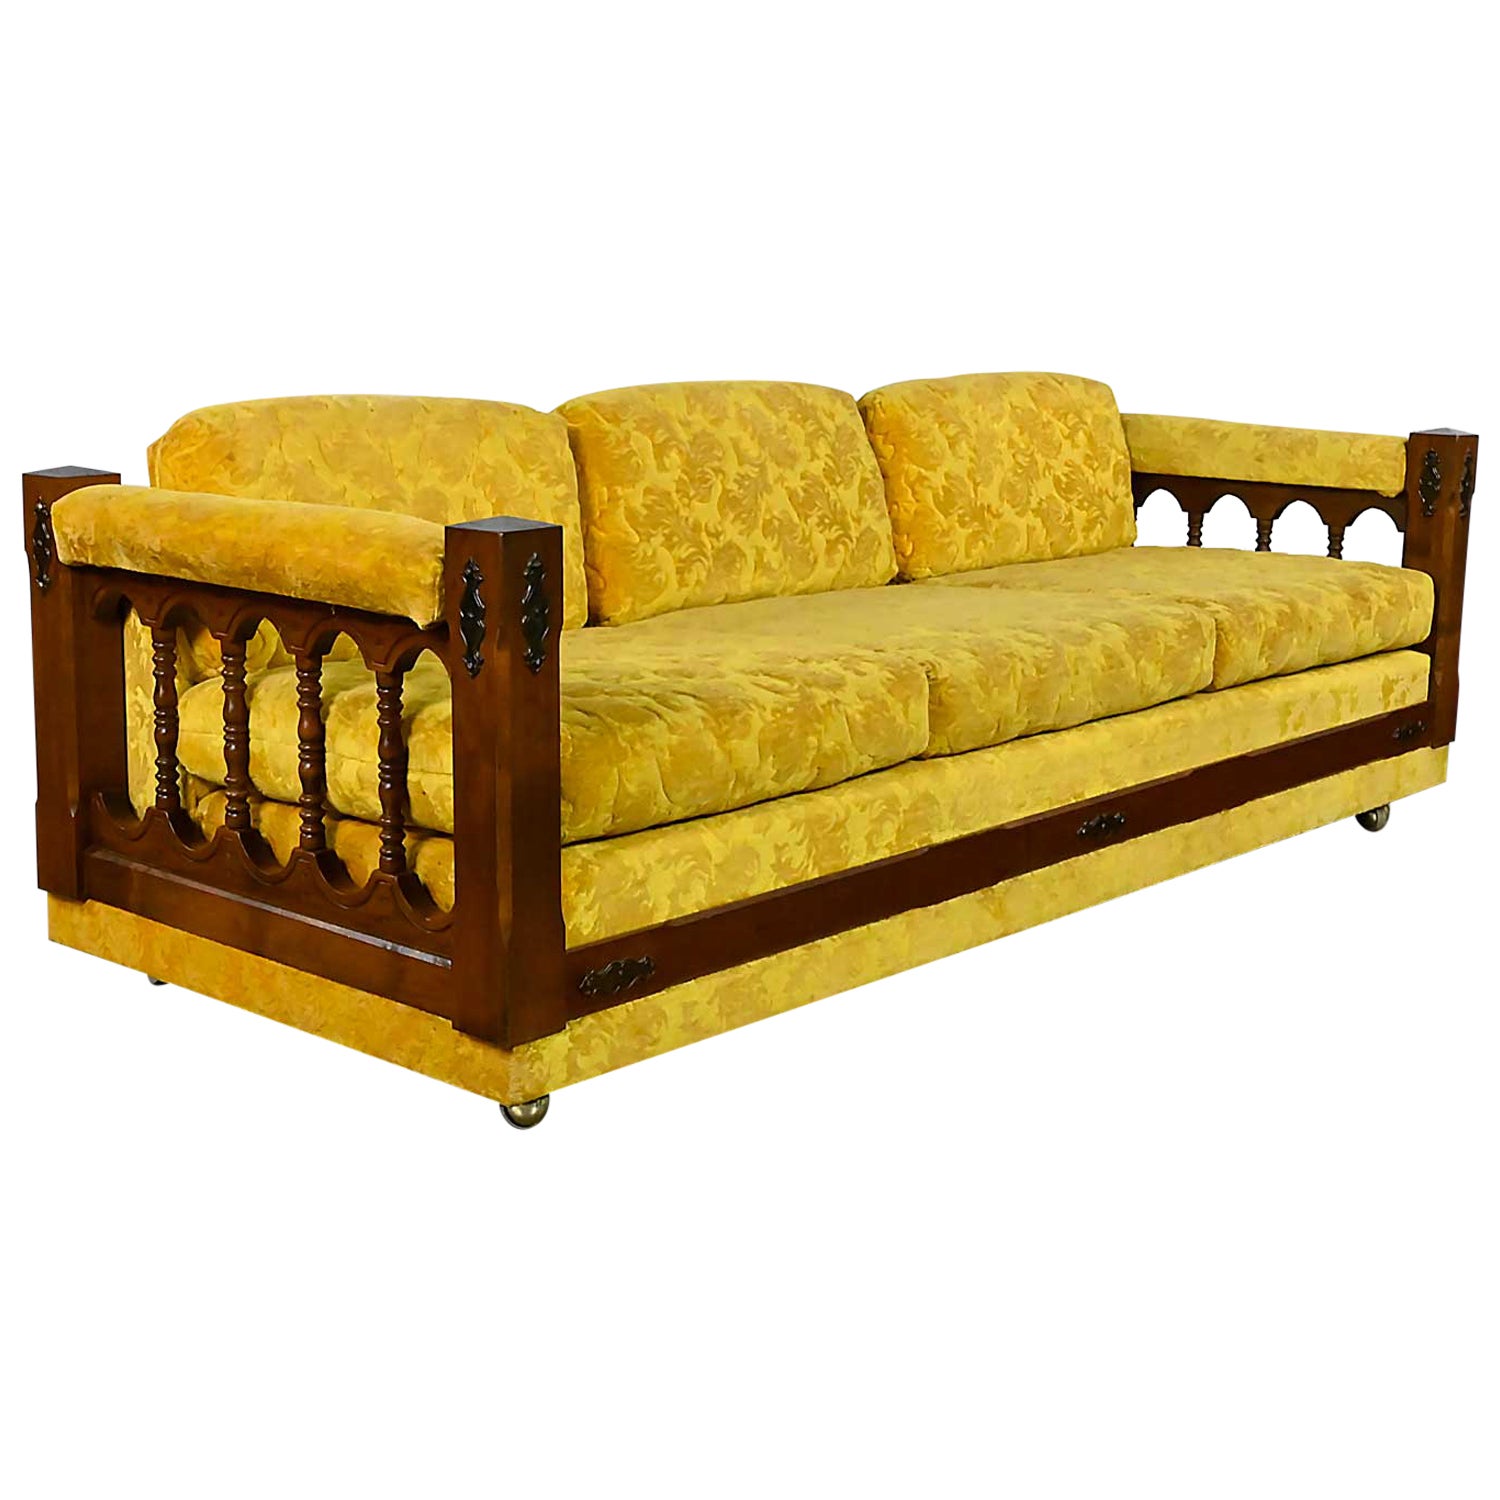 Sofa aus strukturiertem Stoff im spanischen Revival-Stil mit Spindelseiten, Gold